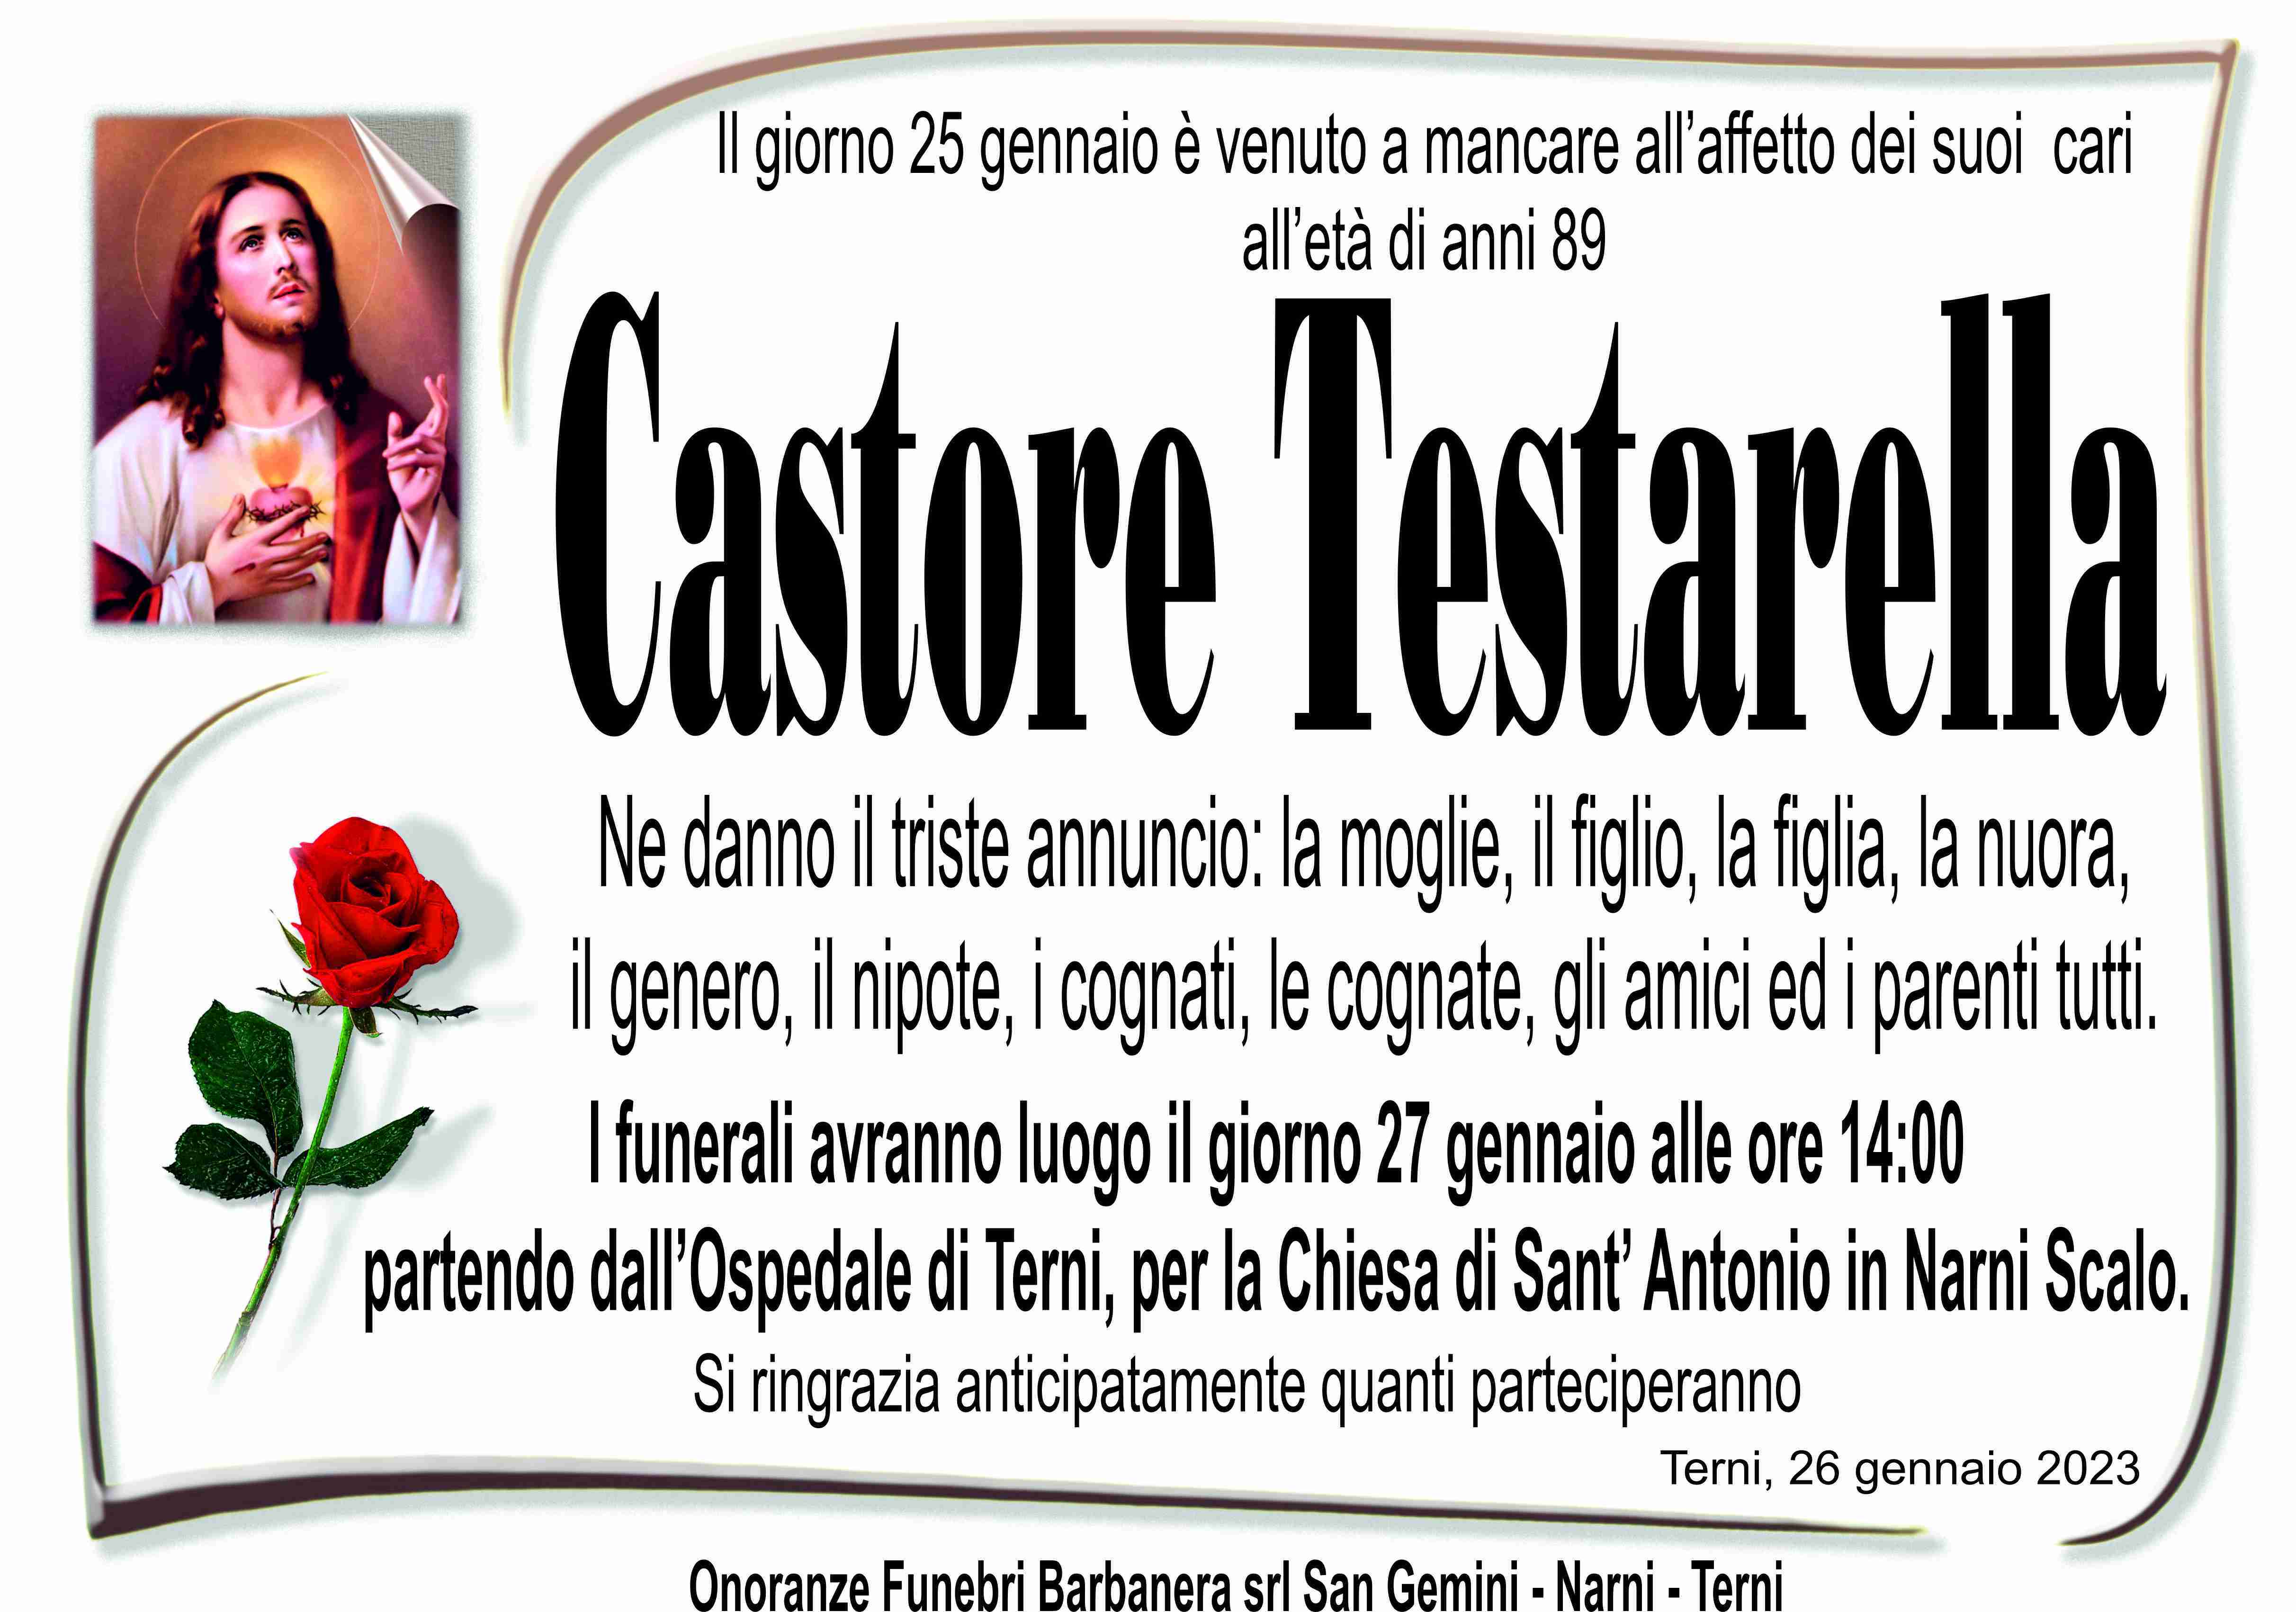 Castore Testarella